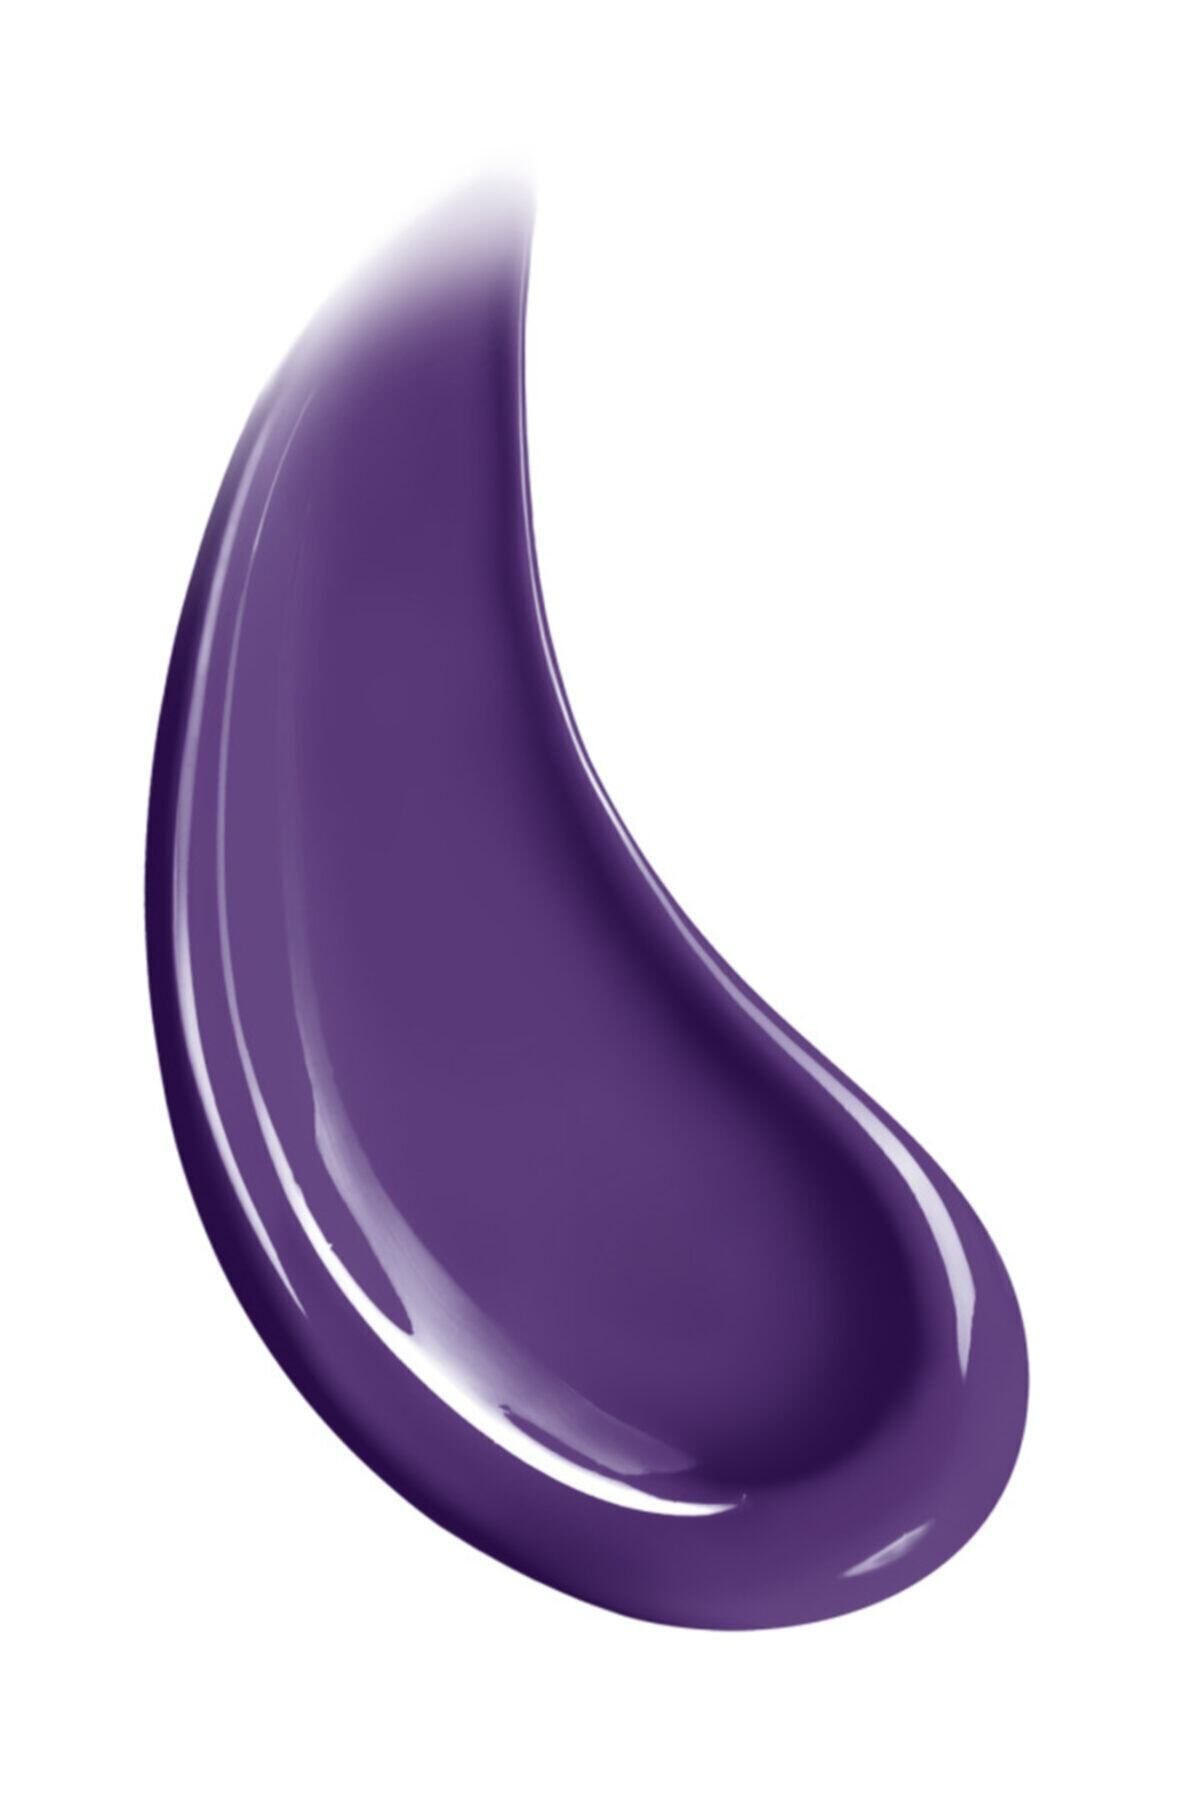 L'Oreal Paris Paris Colorista Hair Makeup Purple